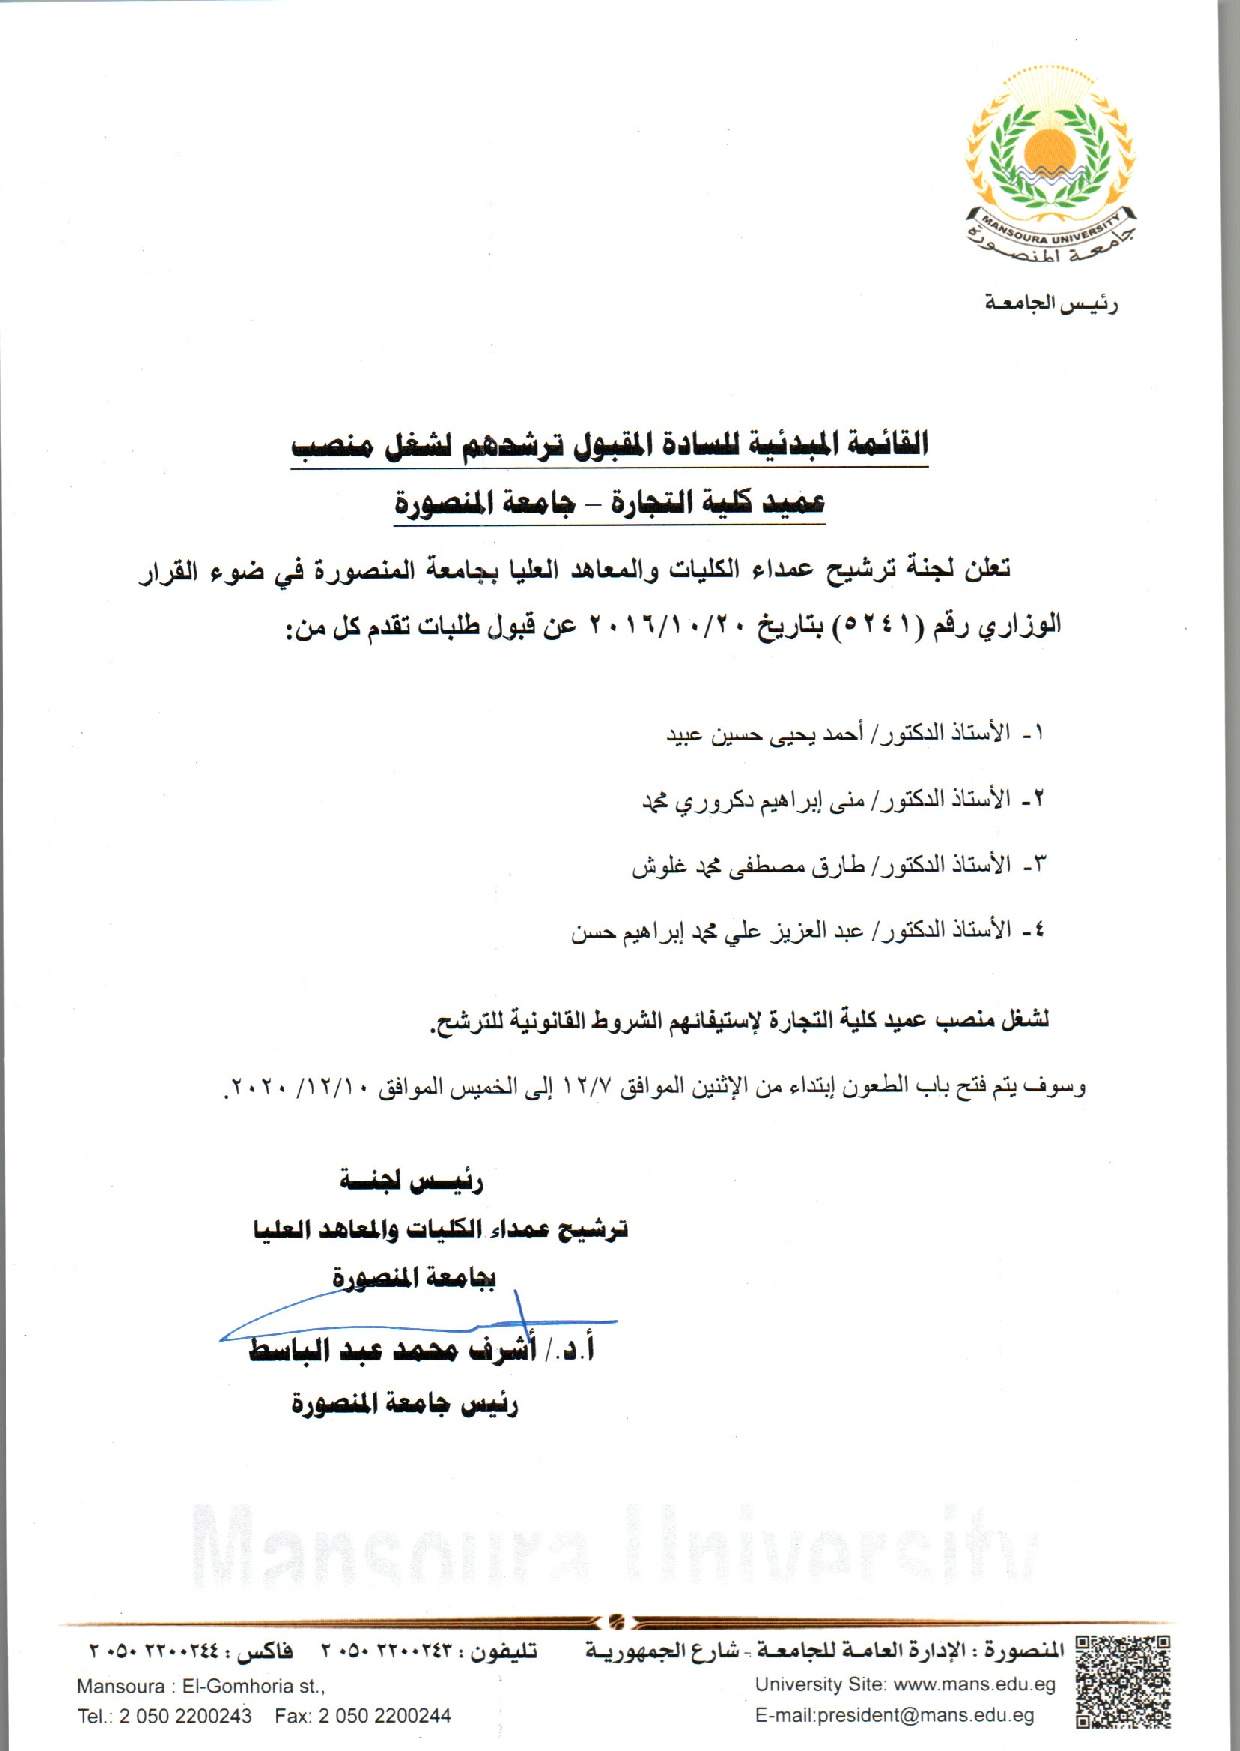 القائمة المبدئية للسادة المقبول ترشحهم لشغل منصب عميد كلية التمريض - جامعة المنصورة